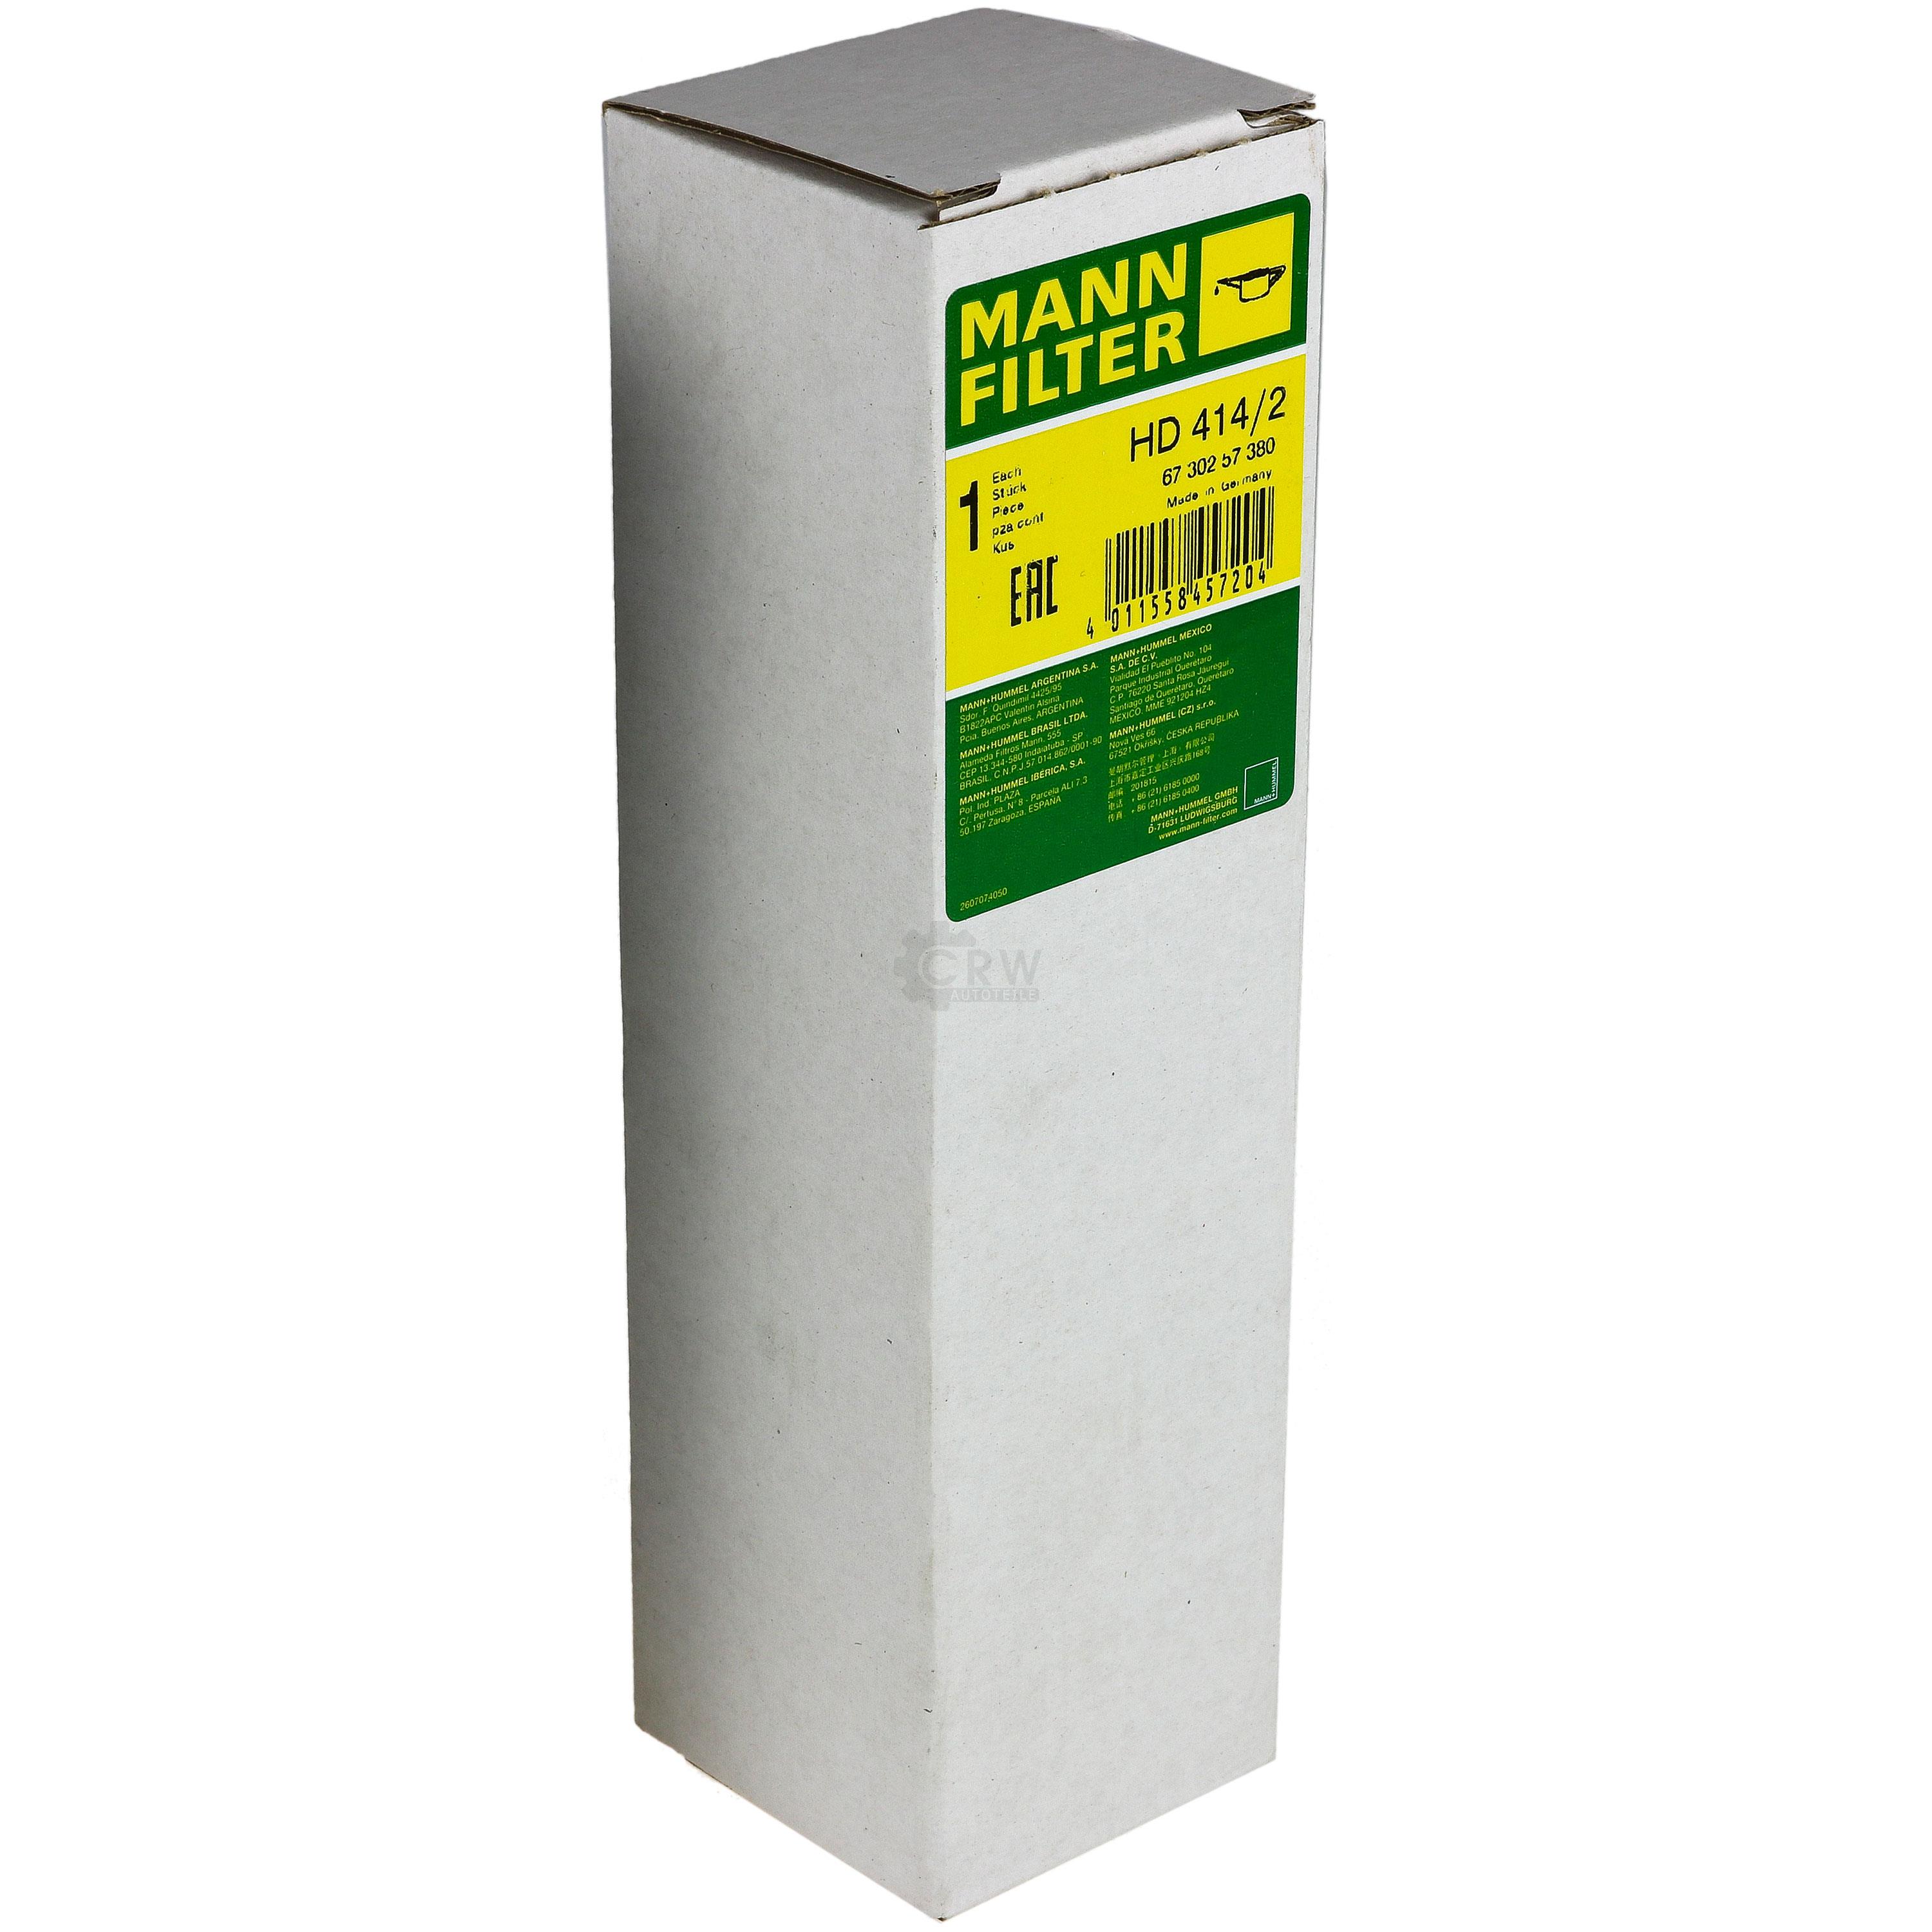 MANN-FILTER Filter für Arbeitshydraulik HD 414/2 Ölfilter Oil